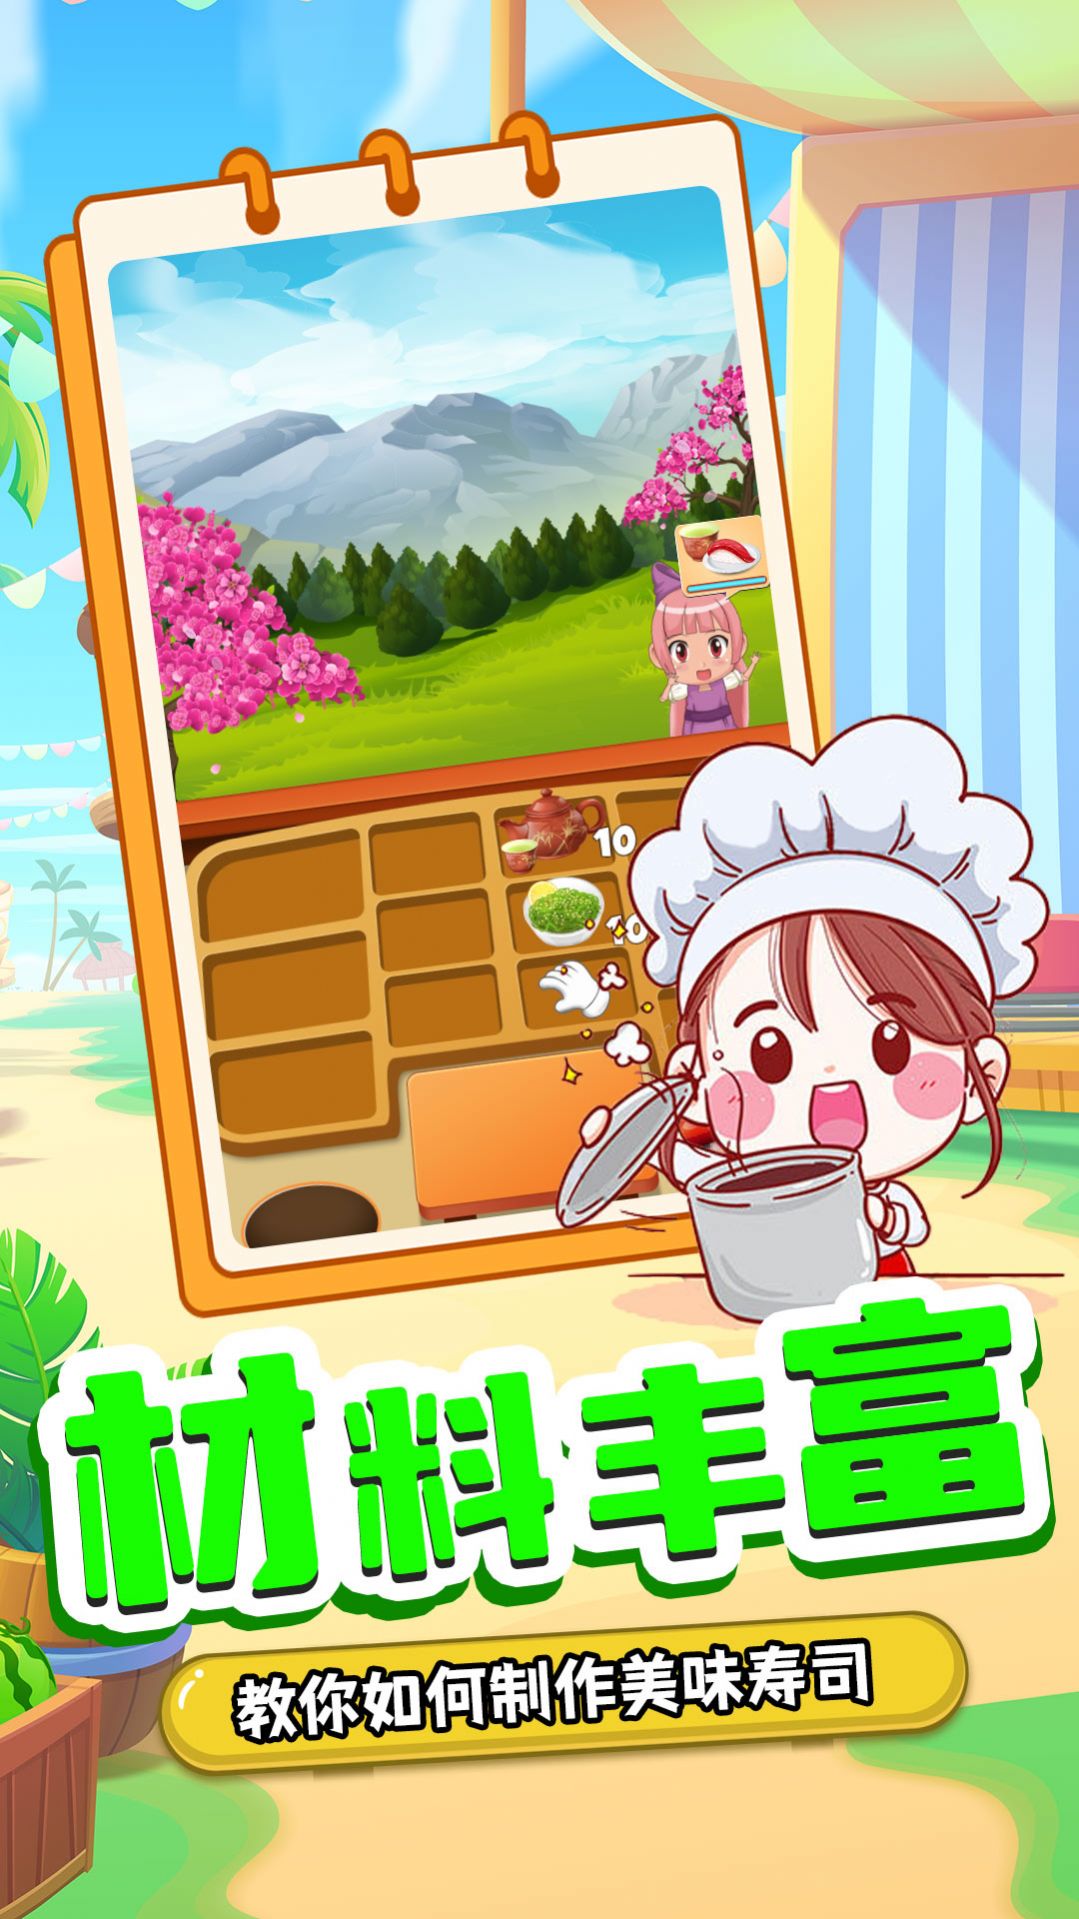 宝宝寿司料理厨房游戏0